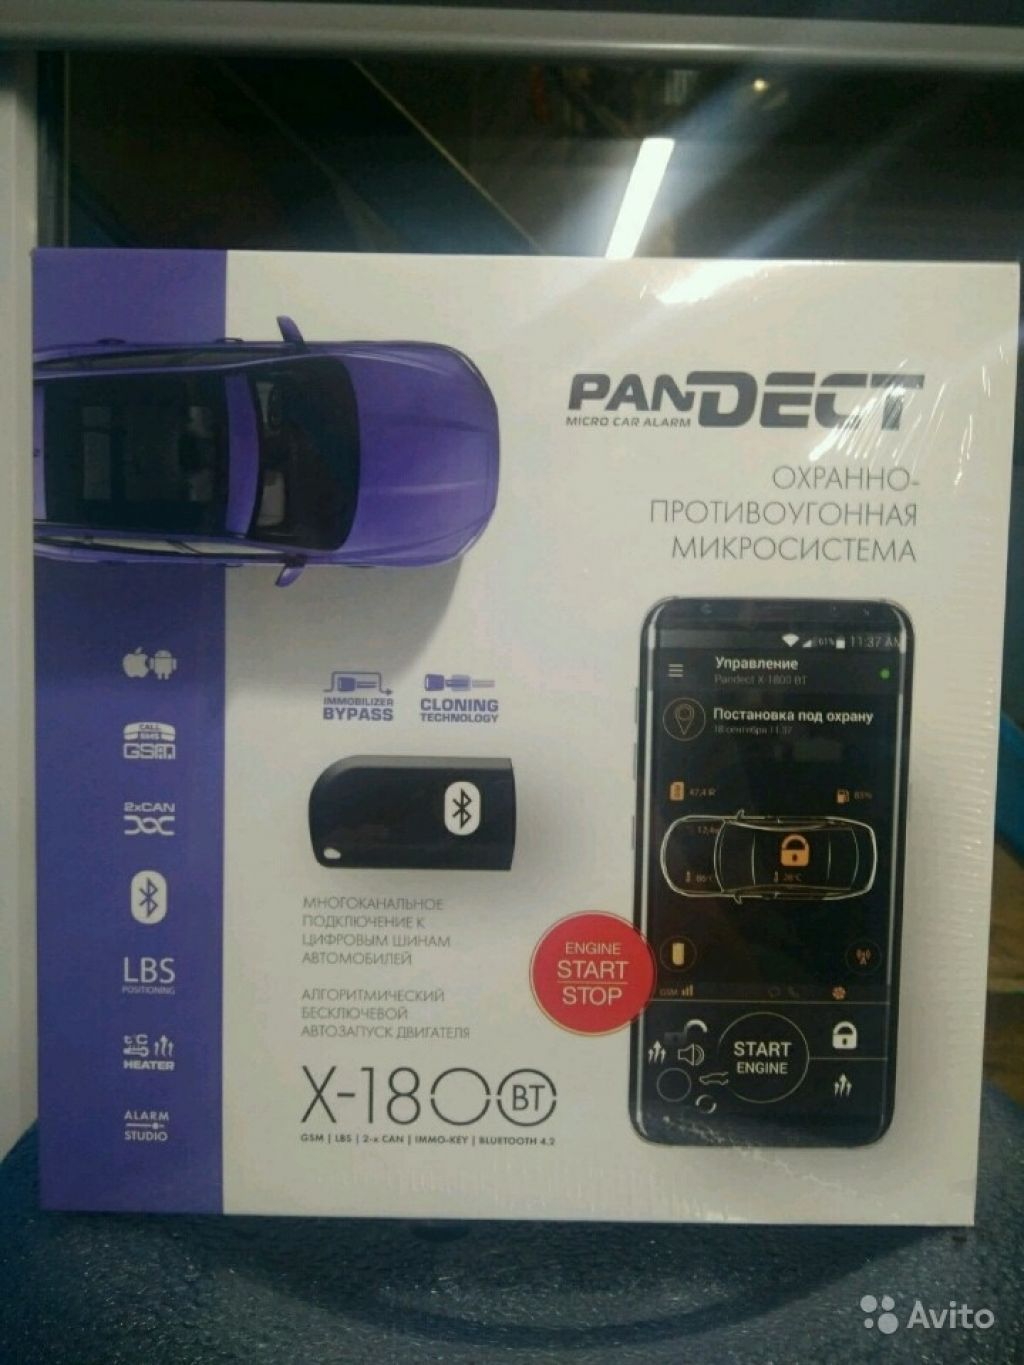 Pandect x-1800 BT с автозапуском и установкой в Москве. Фото 1